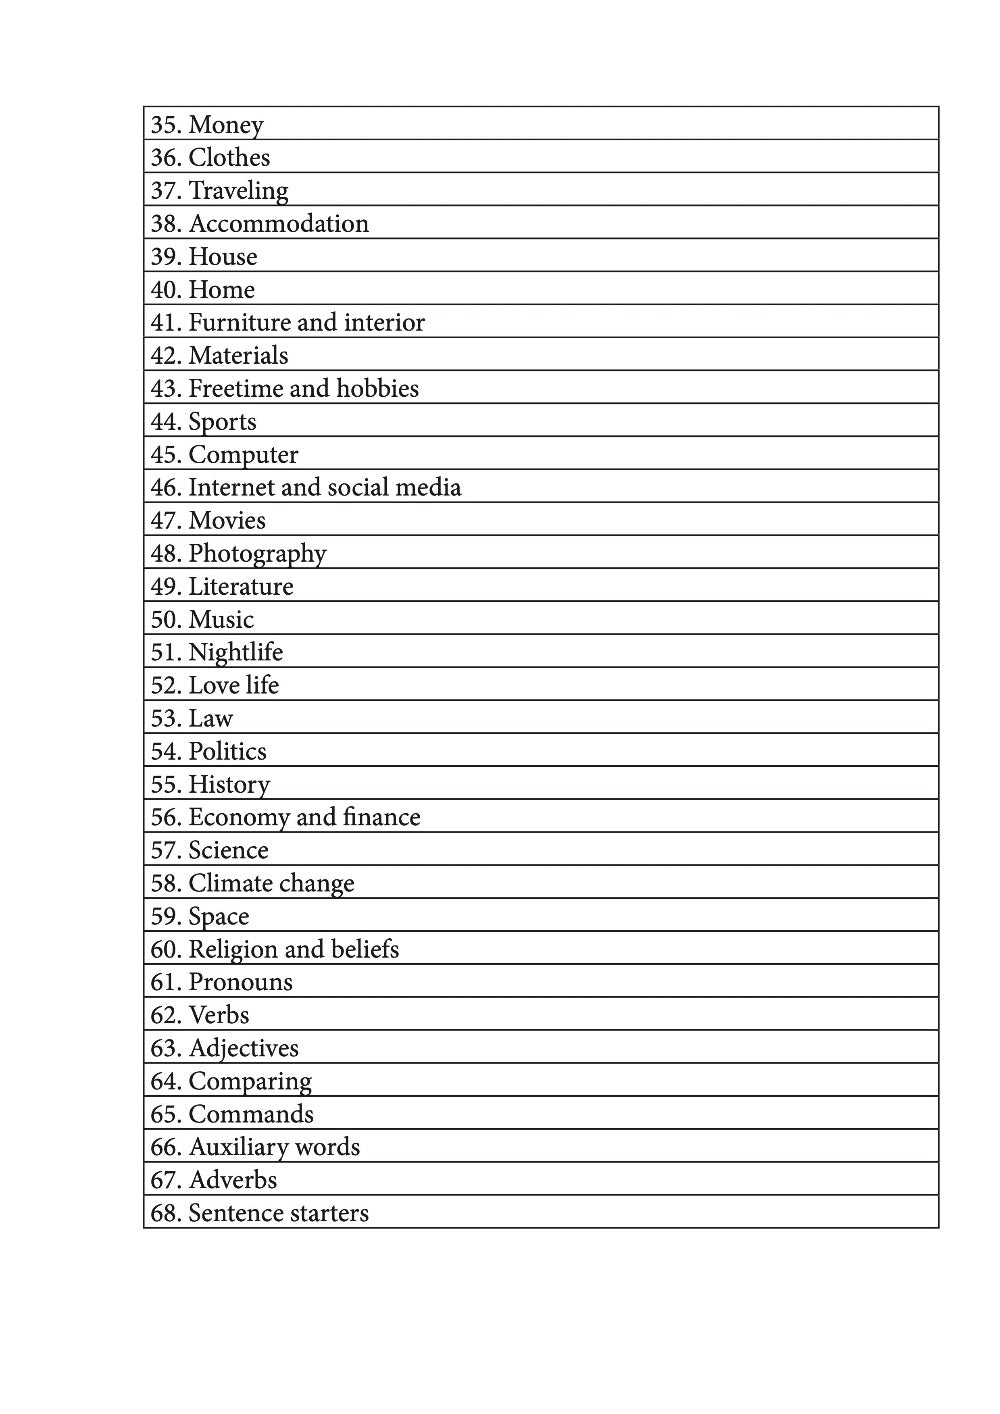 Kirundi language learning notebook contents page 2